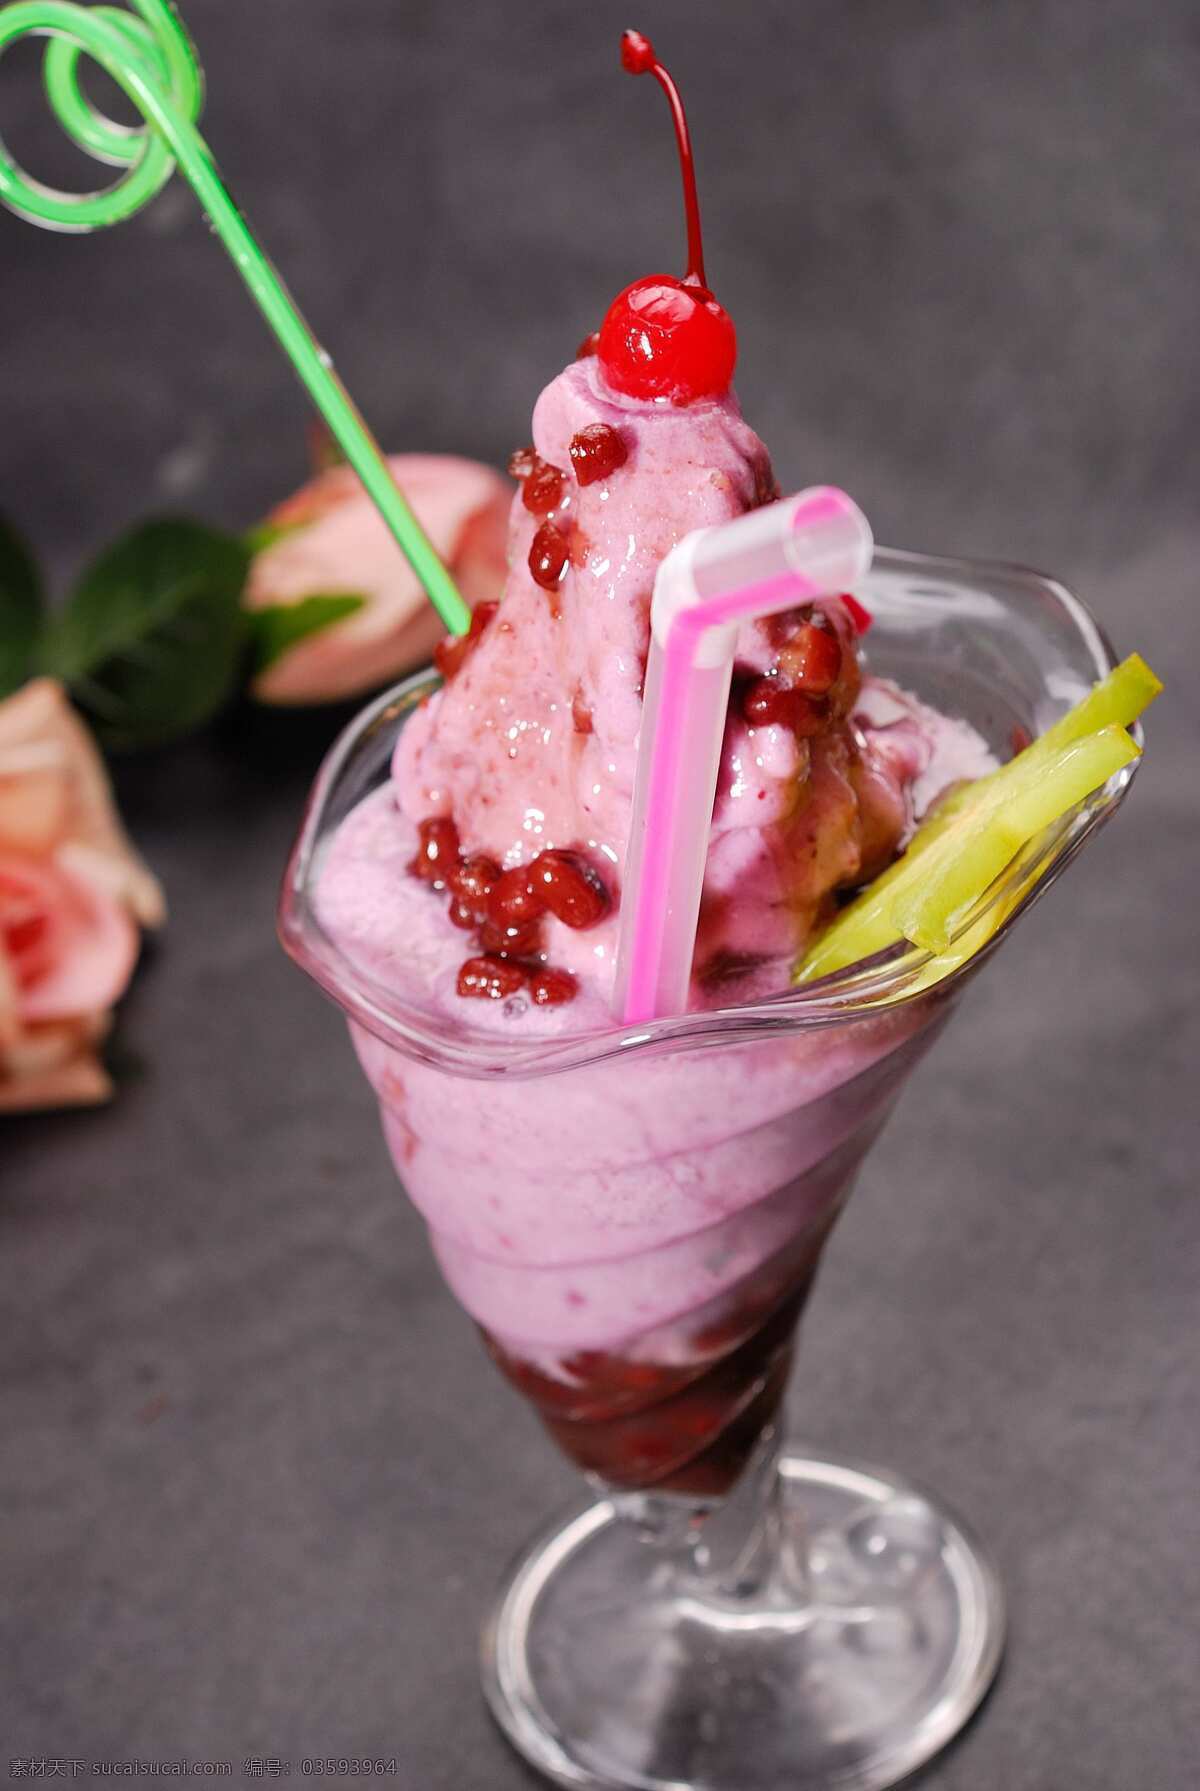 蓝莓红豆沙冰 红豆沙冰 冰沙系列 冰沙 沙冰 饮品 冷饮 饮料酒水 餐饮美食 西餐美食